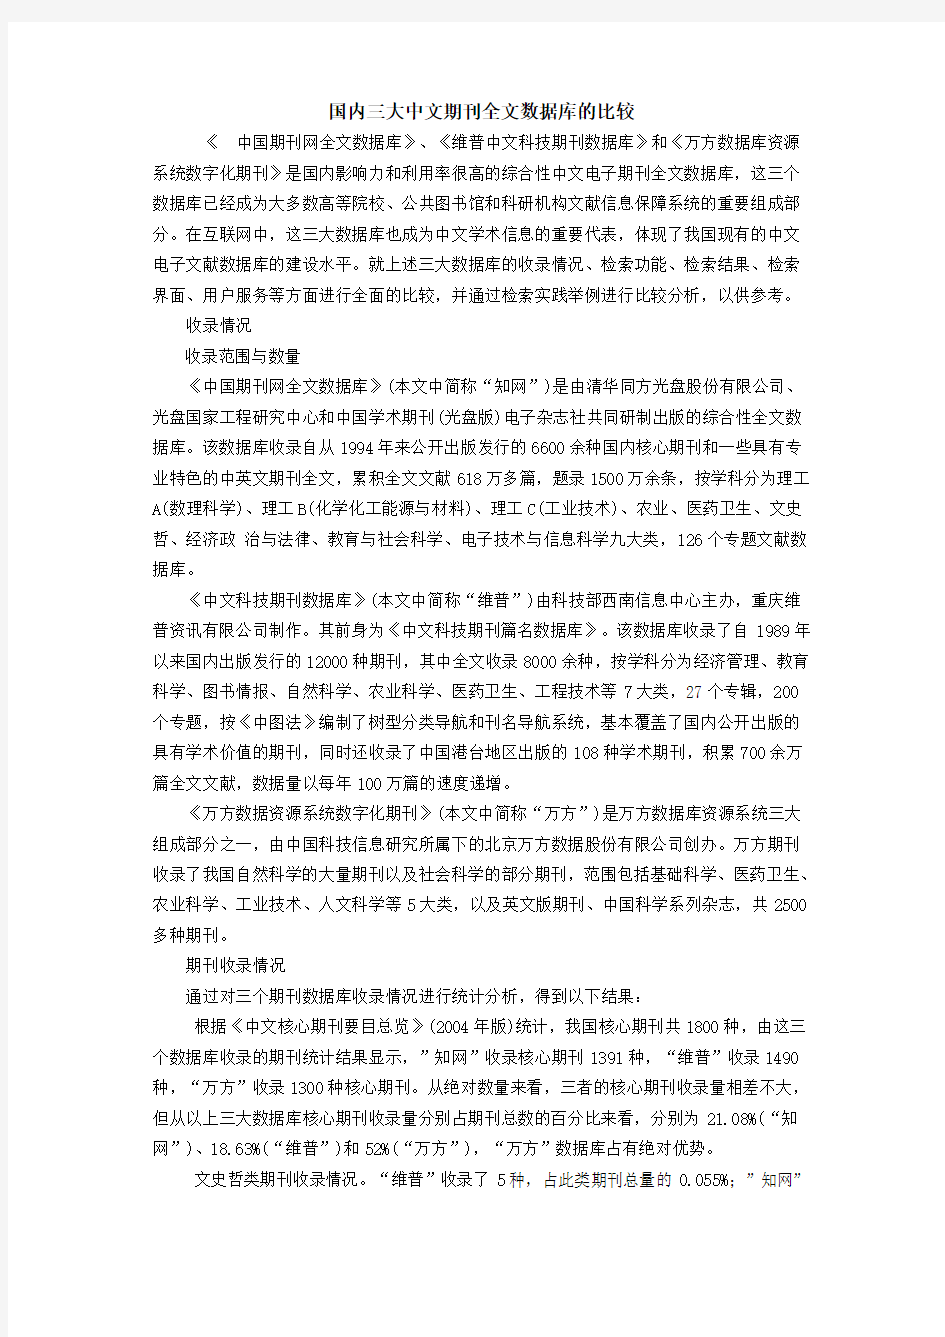 国内三大中文期刊全文数据库的比较